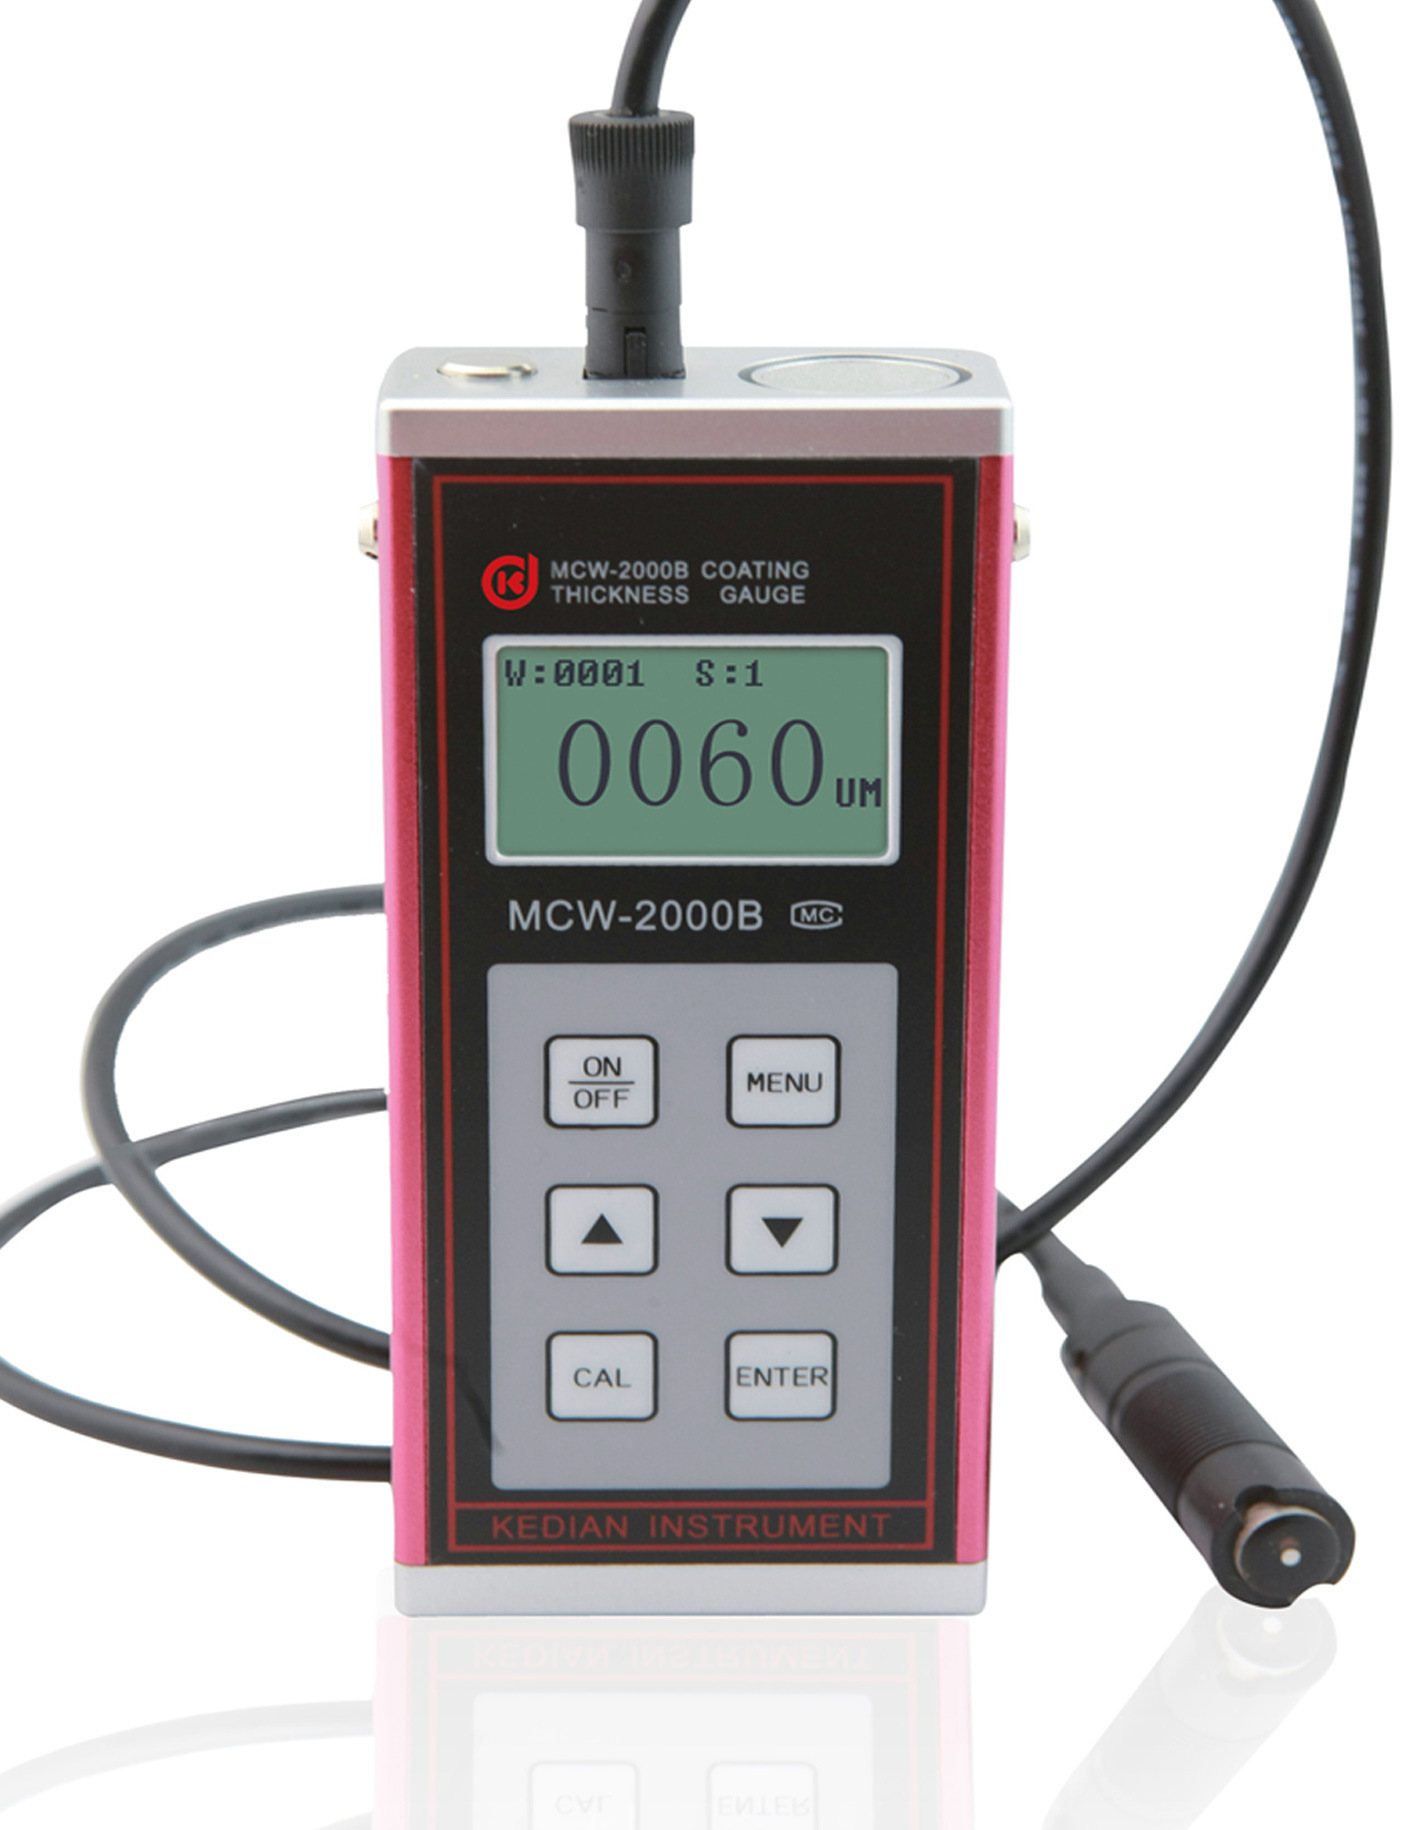 皆准仪器 MCW-2000B型涡流镀层测厚仪  数显测厚仪 薄膜测厚仪 厂家直销